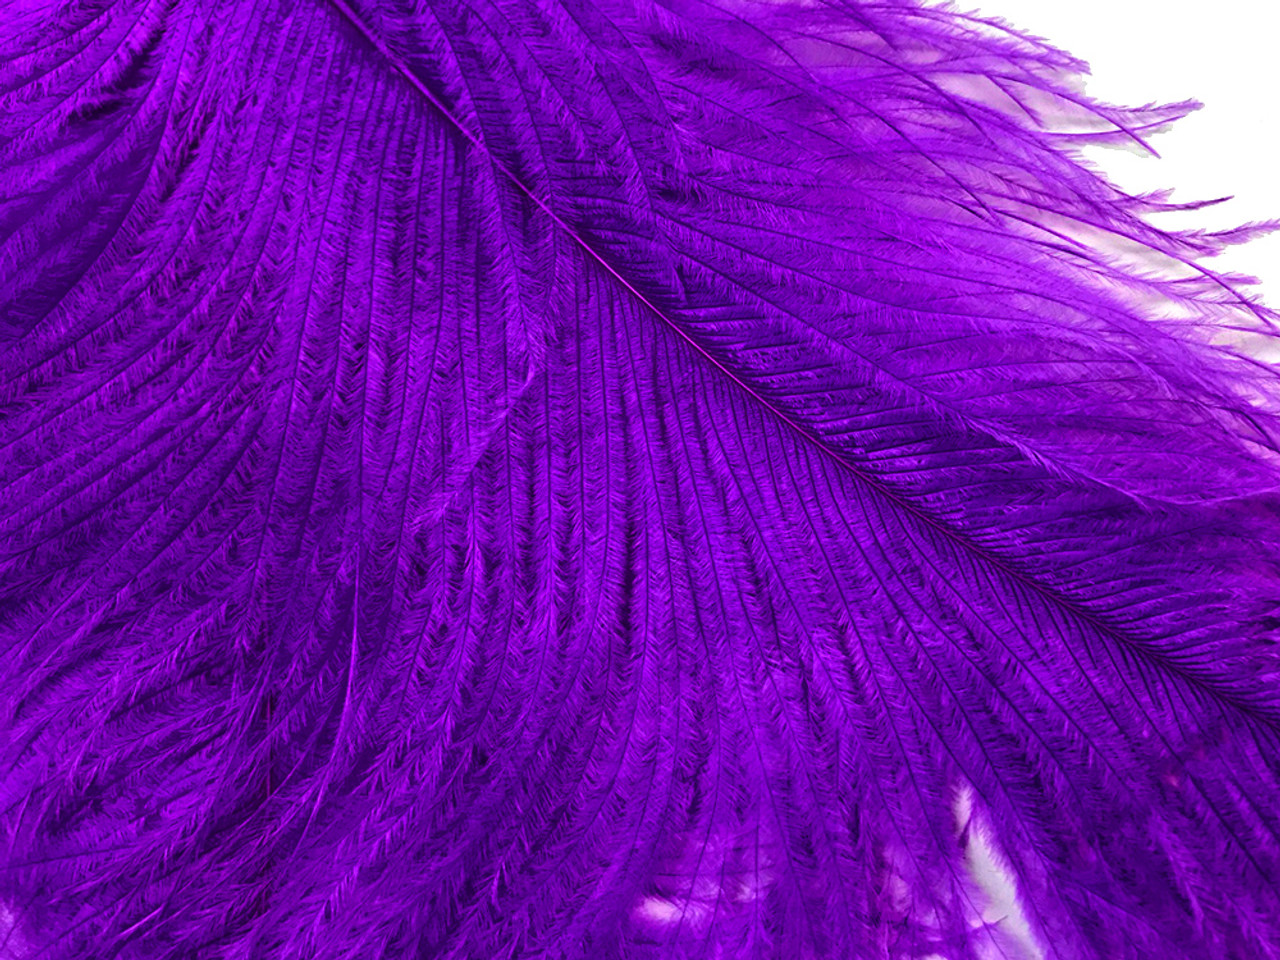 WHOLESALE Plum Purple Ostrich Feather Trims/FRINGE Bulk Cheap